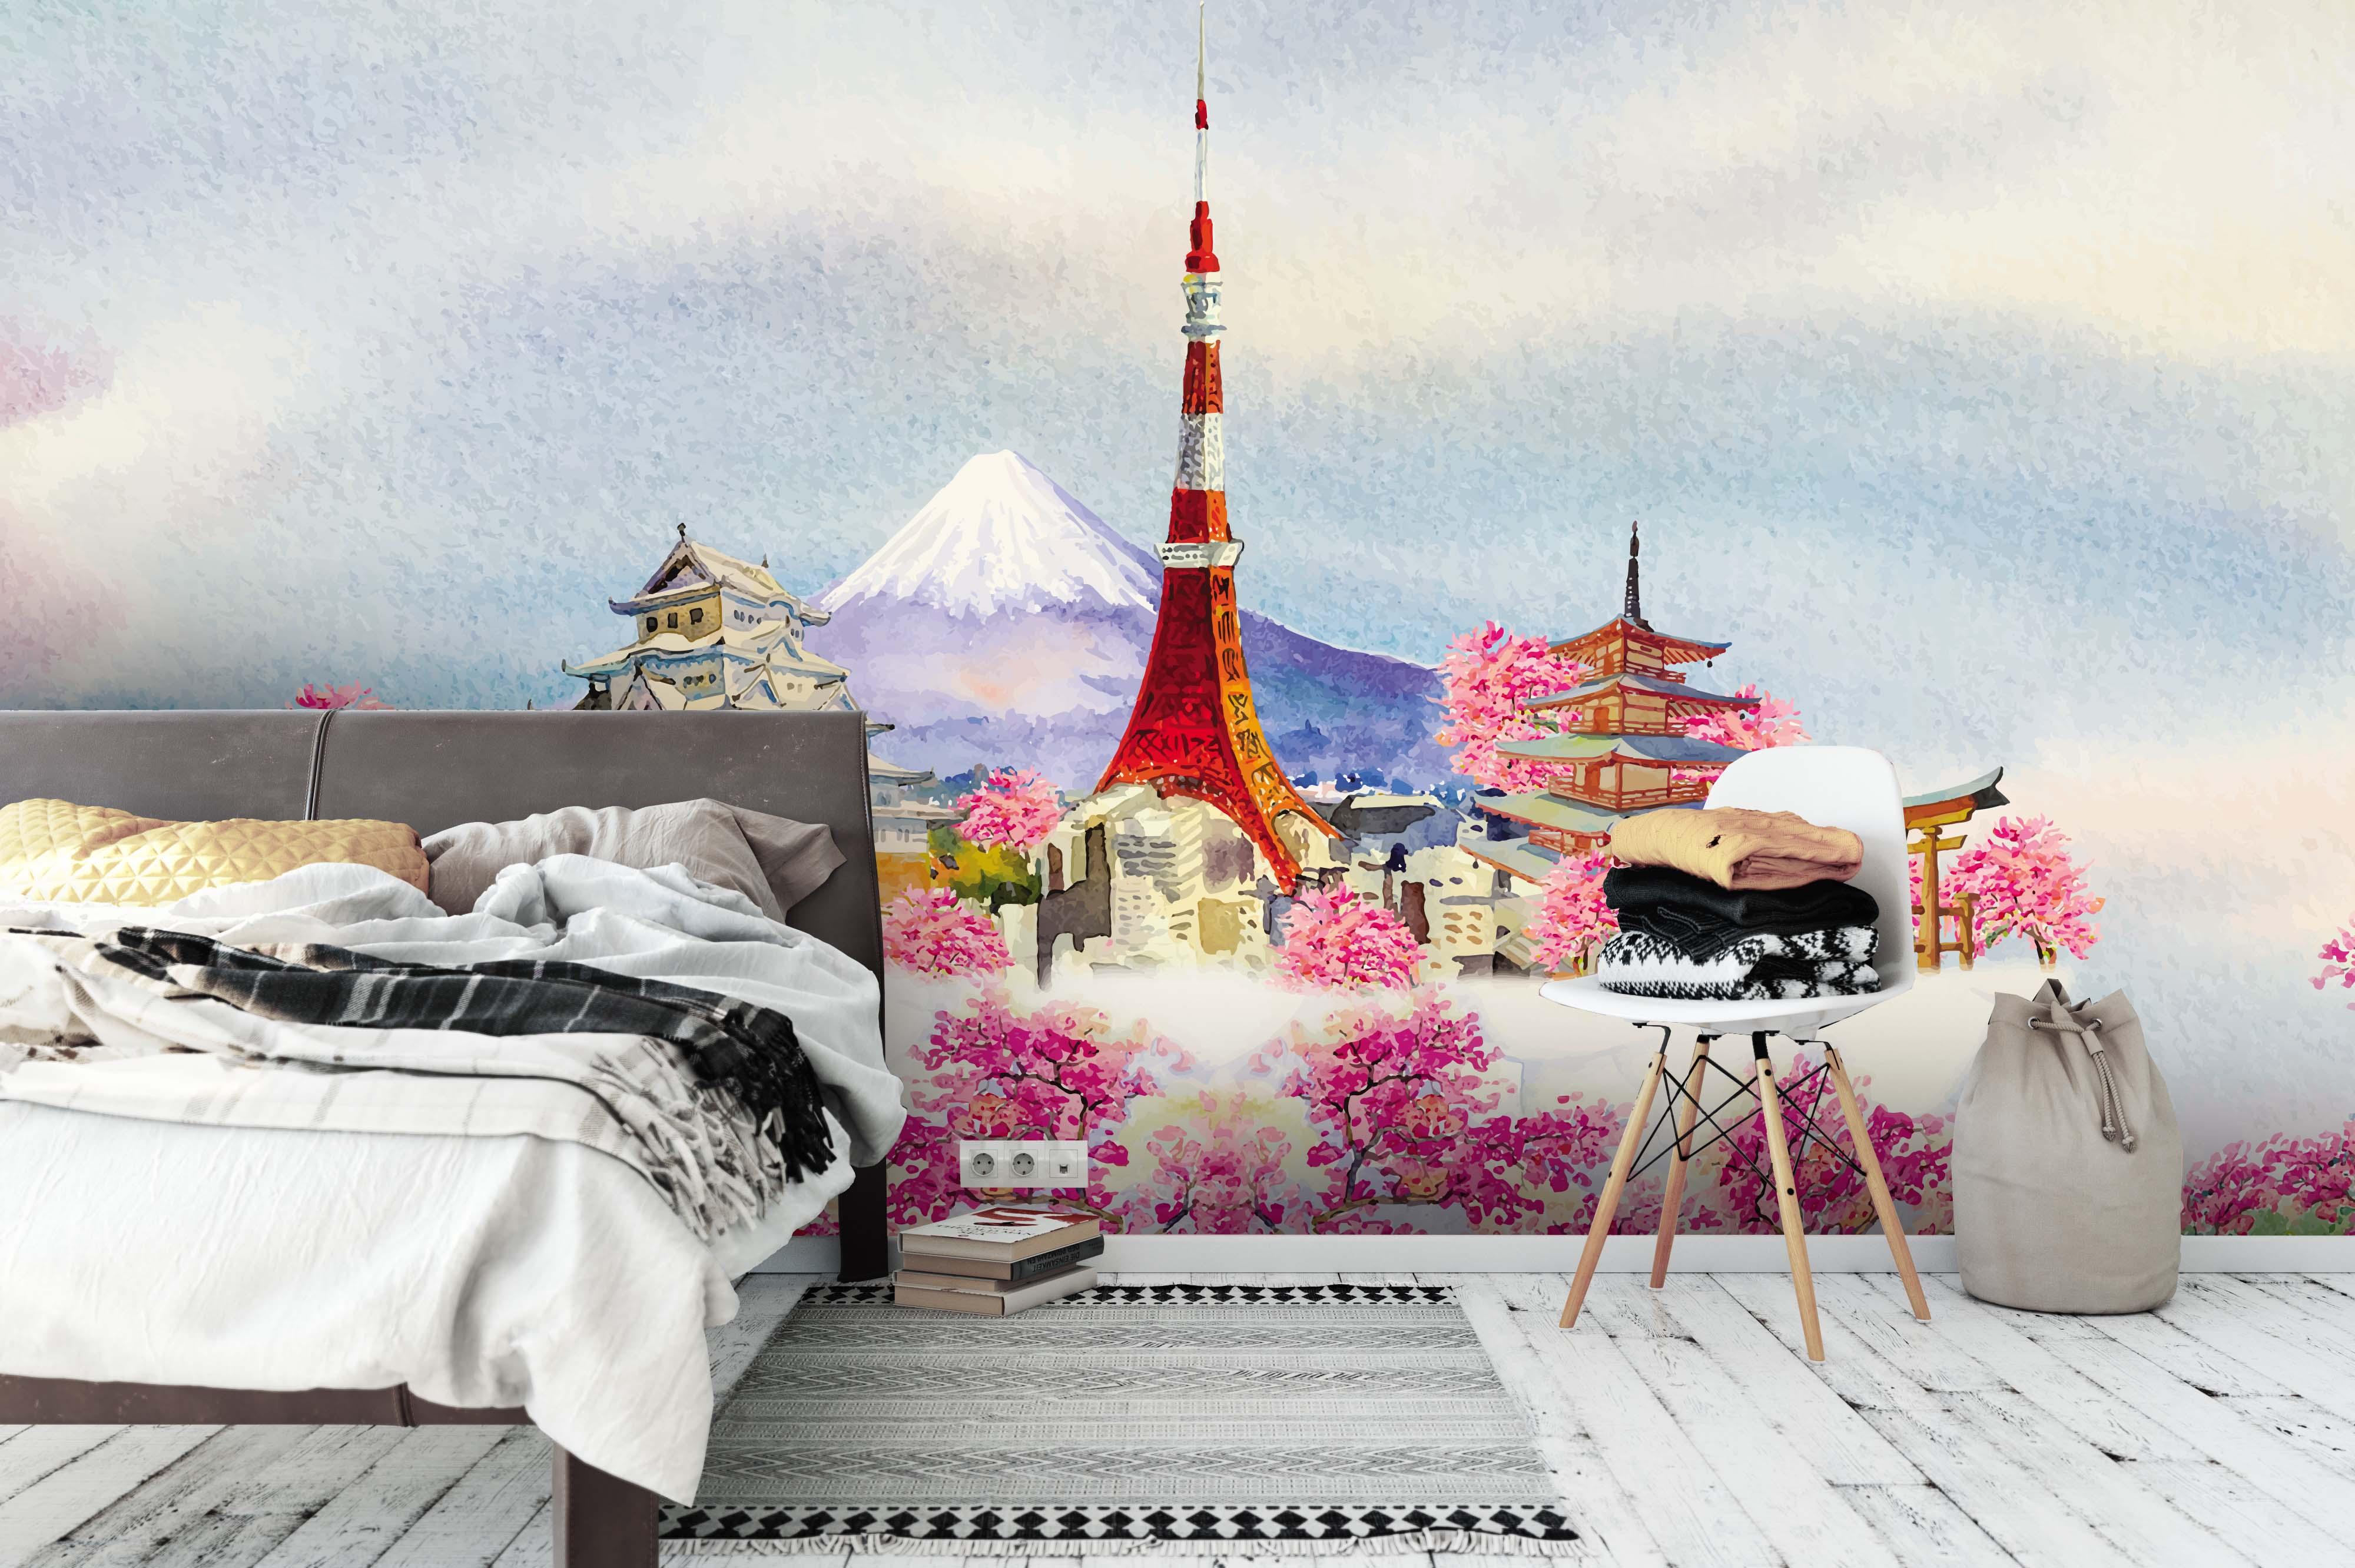 3D Snow Mountain Lighthouse Wall Mural Wallpaper 81- Jess Art Decoration